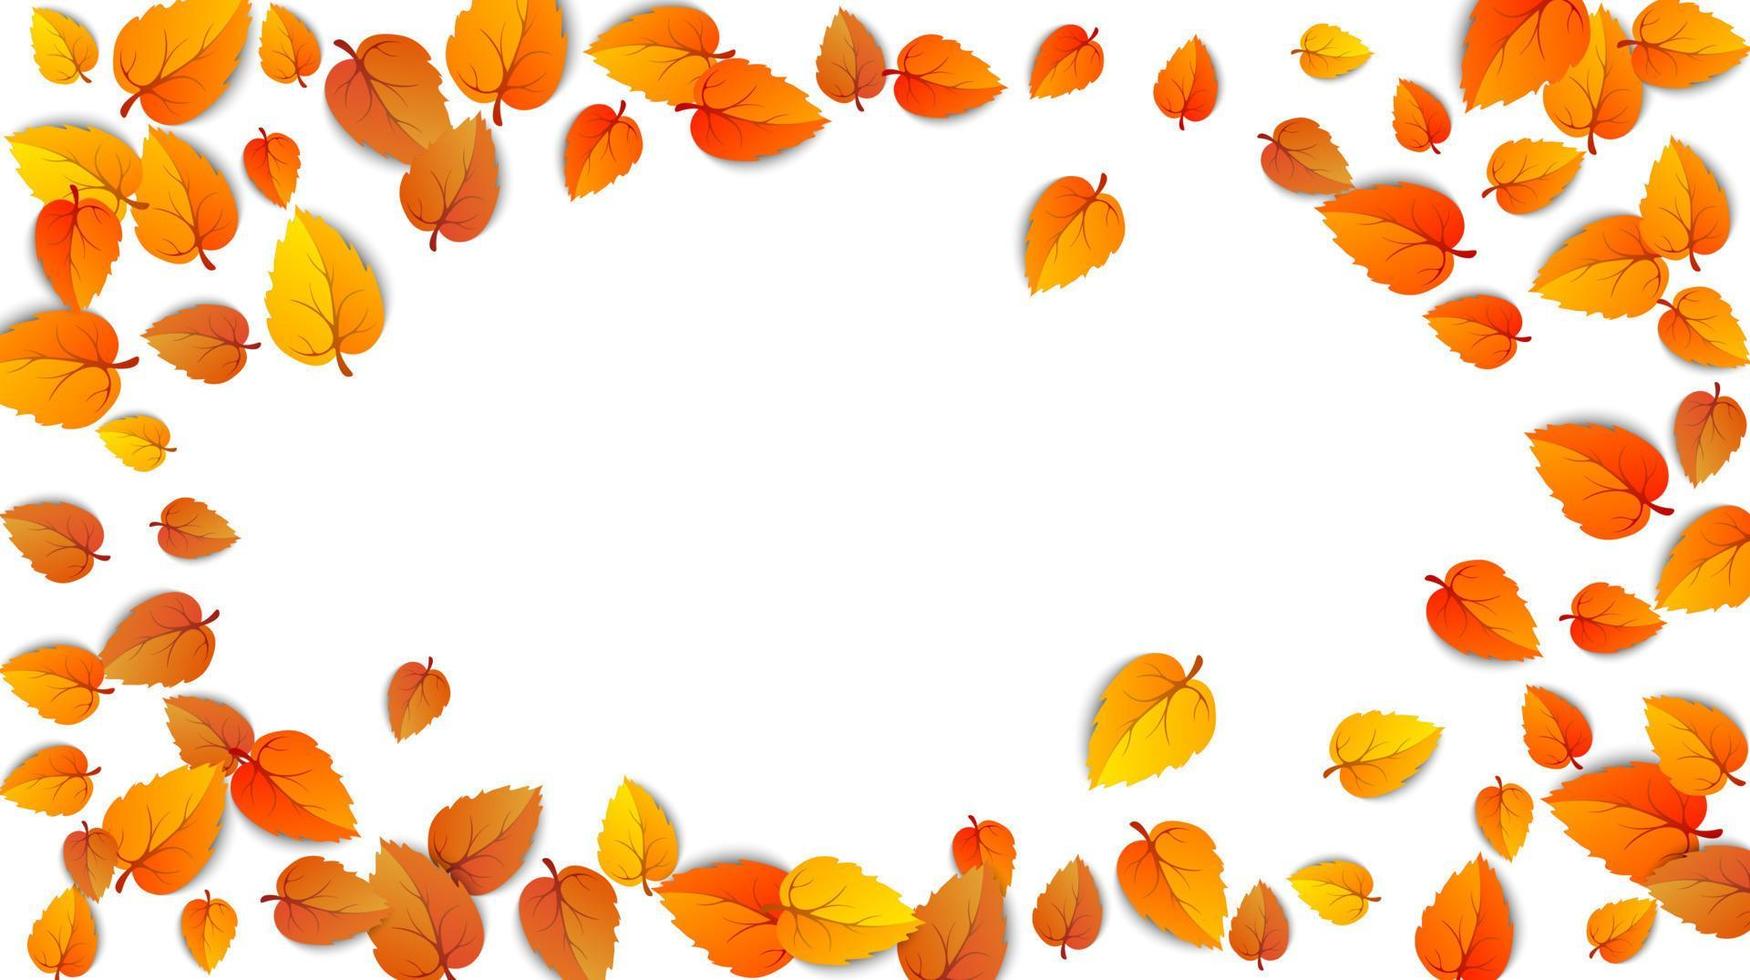 höst oval reklam baner med löv isolerat på vit bakgrund för höst falla försäljning. presentationer ram layout dekorerad blad för handla försäljning eller promo affisch design. vektor illustration